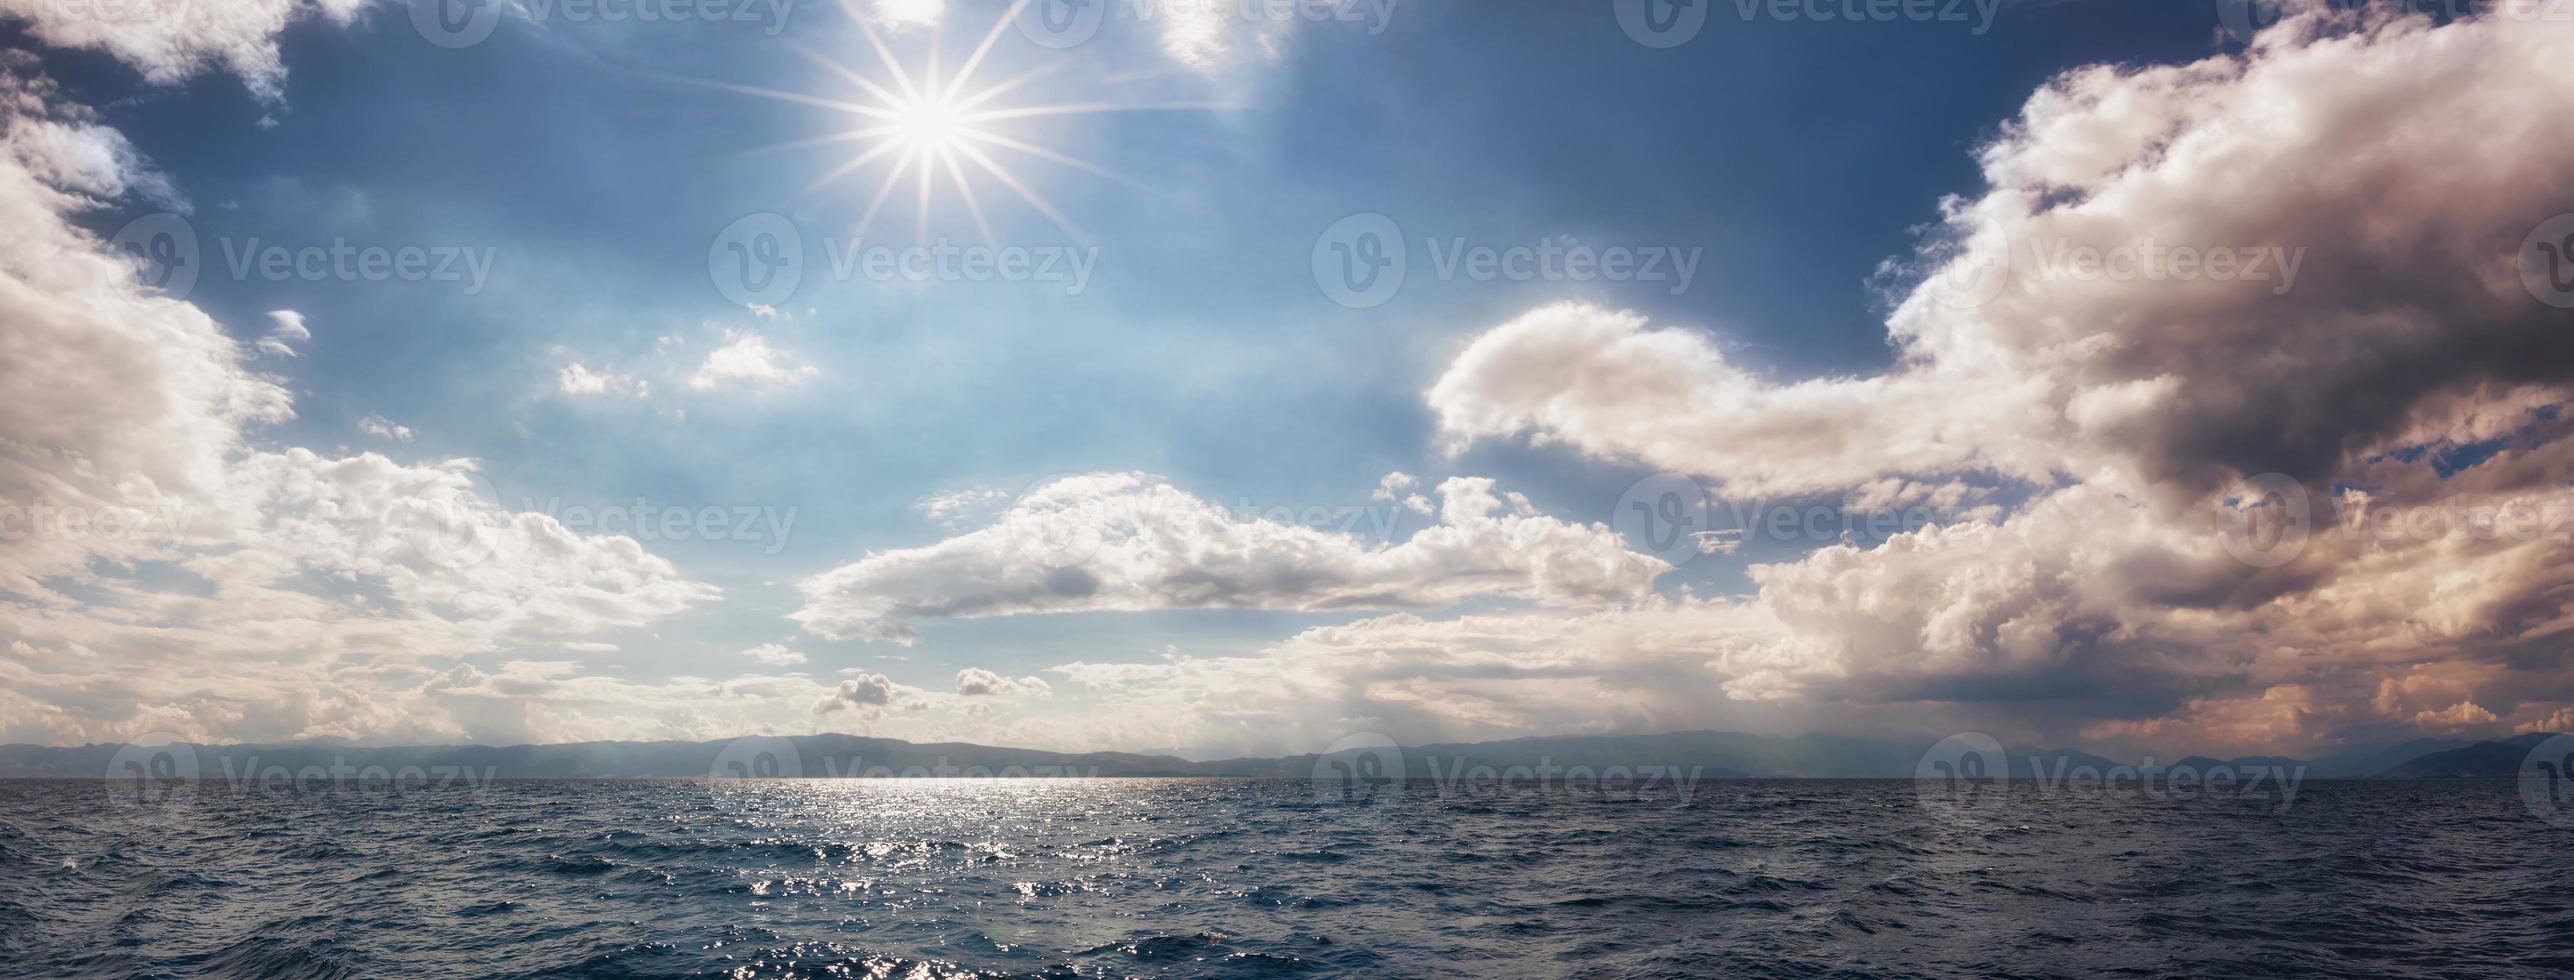 vista panoramica del bel cielo sul lago di ohrid. cielo colorato con nuvole nuvolose e sole splendente. cielo nuvoloso. Cloudscape e Skyscape Atlake Ohrid, Macedonia del sud. foto